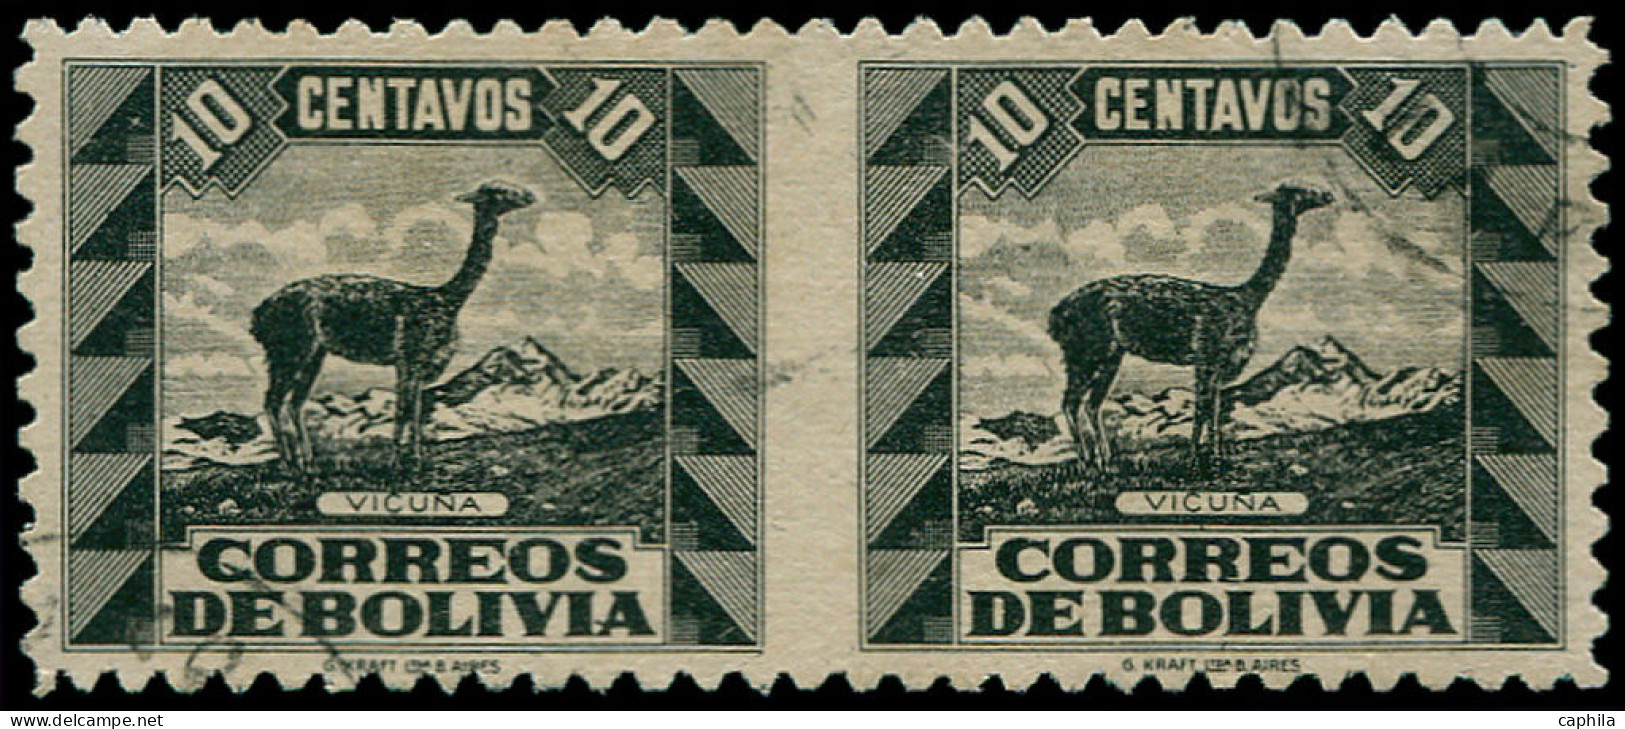 O BOLIVIE - Poste - 225, Paire Horizontale, Non Dentelée Entre: 10c. Noir Vigogne - Bolivie